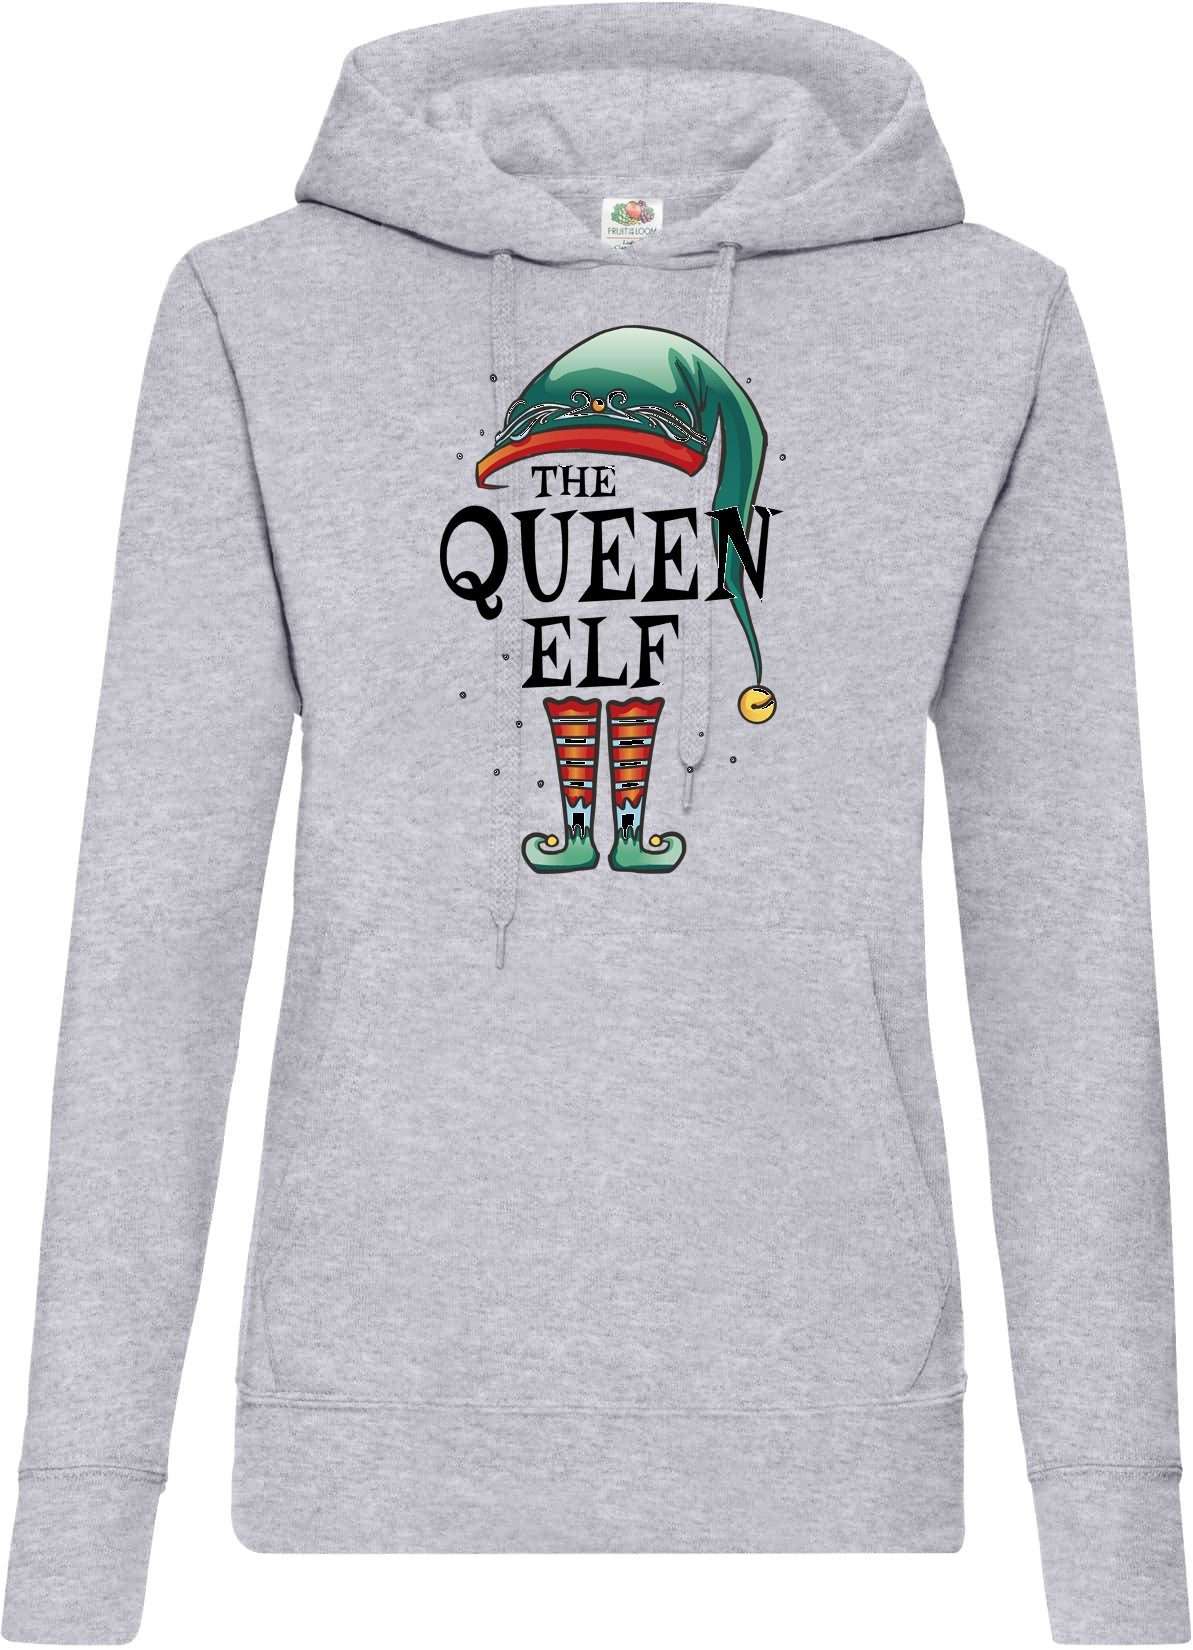 Hoodie Женский свитер с капюшоном The Queen Elf с модным рождественским принтом спереди